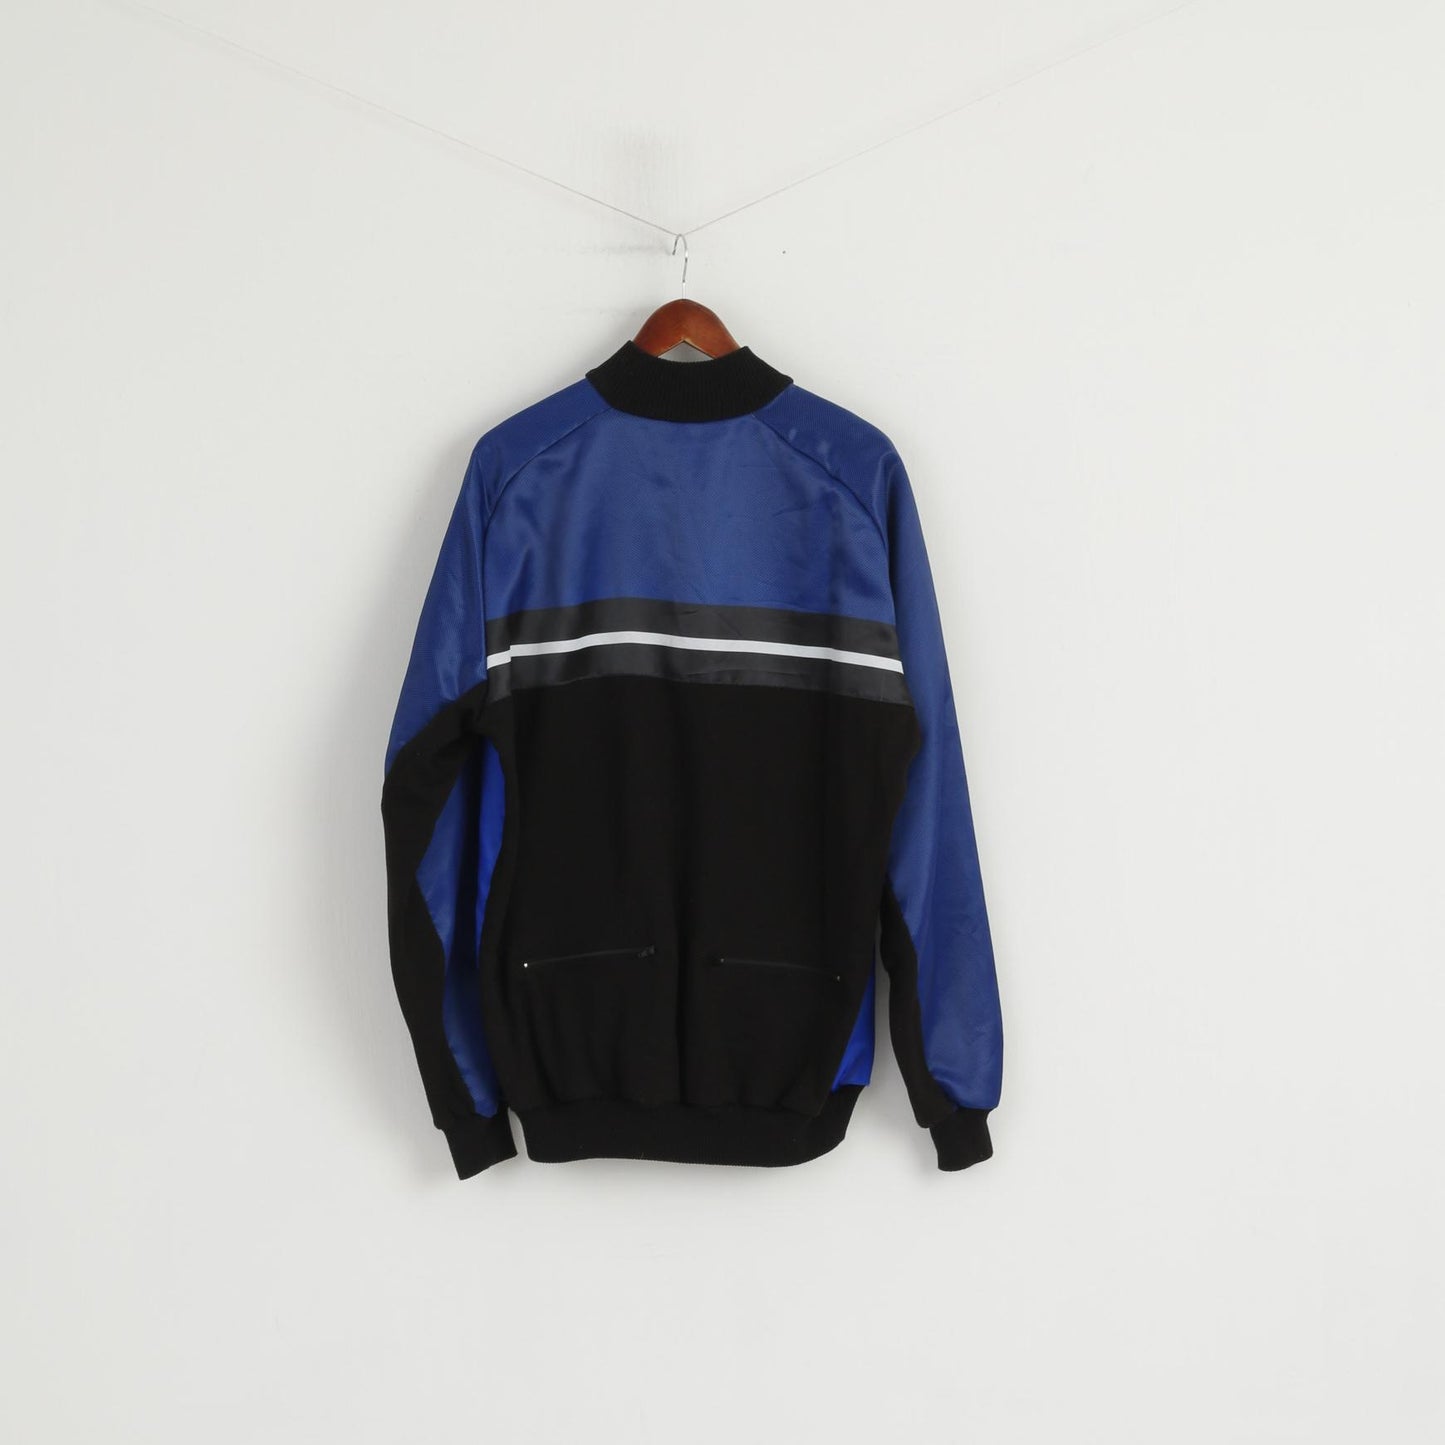 Rogelli Sportswear Men L Cycling Jacket Blue Full Zipper Warm Bike Wear Top